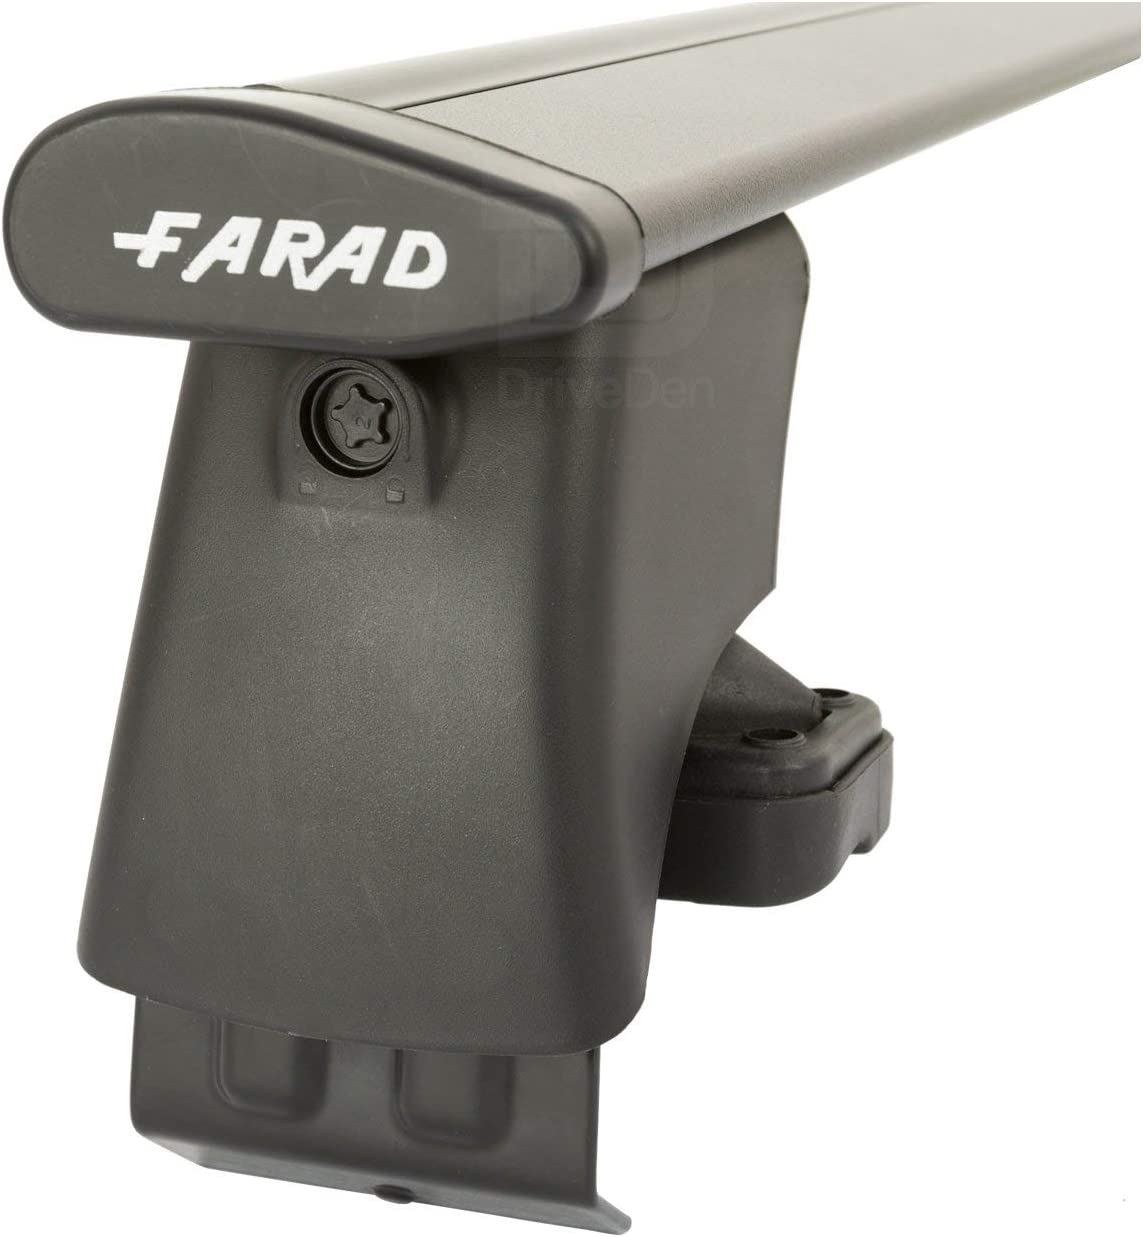 FARAD-Kit H2 per barre portatutto - Skoda Fabia 2015> (senza corrimano)